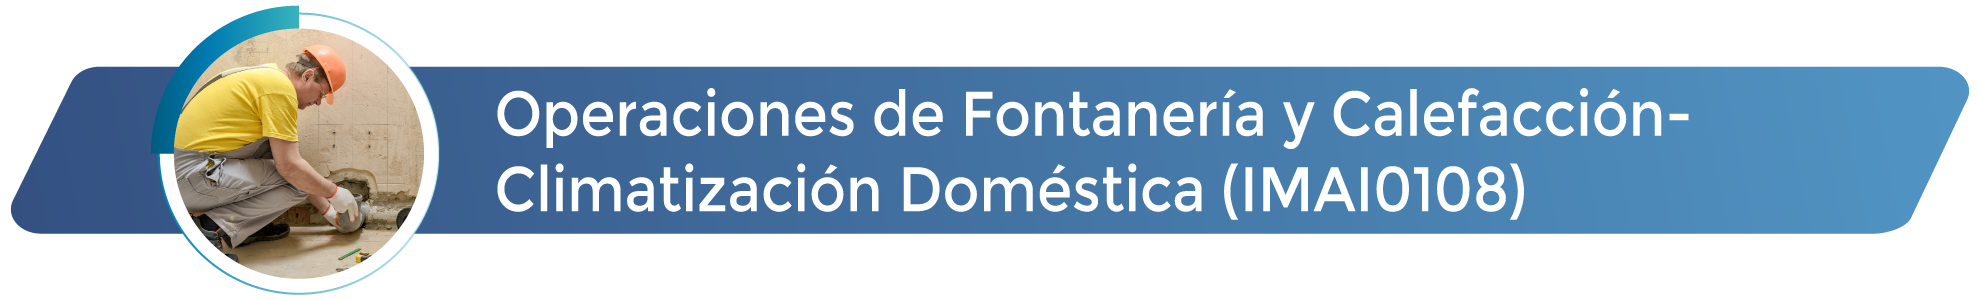 Operaciones de Fontanería y Calefacción-Climatización Domestica